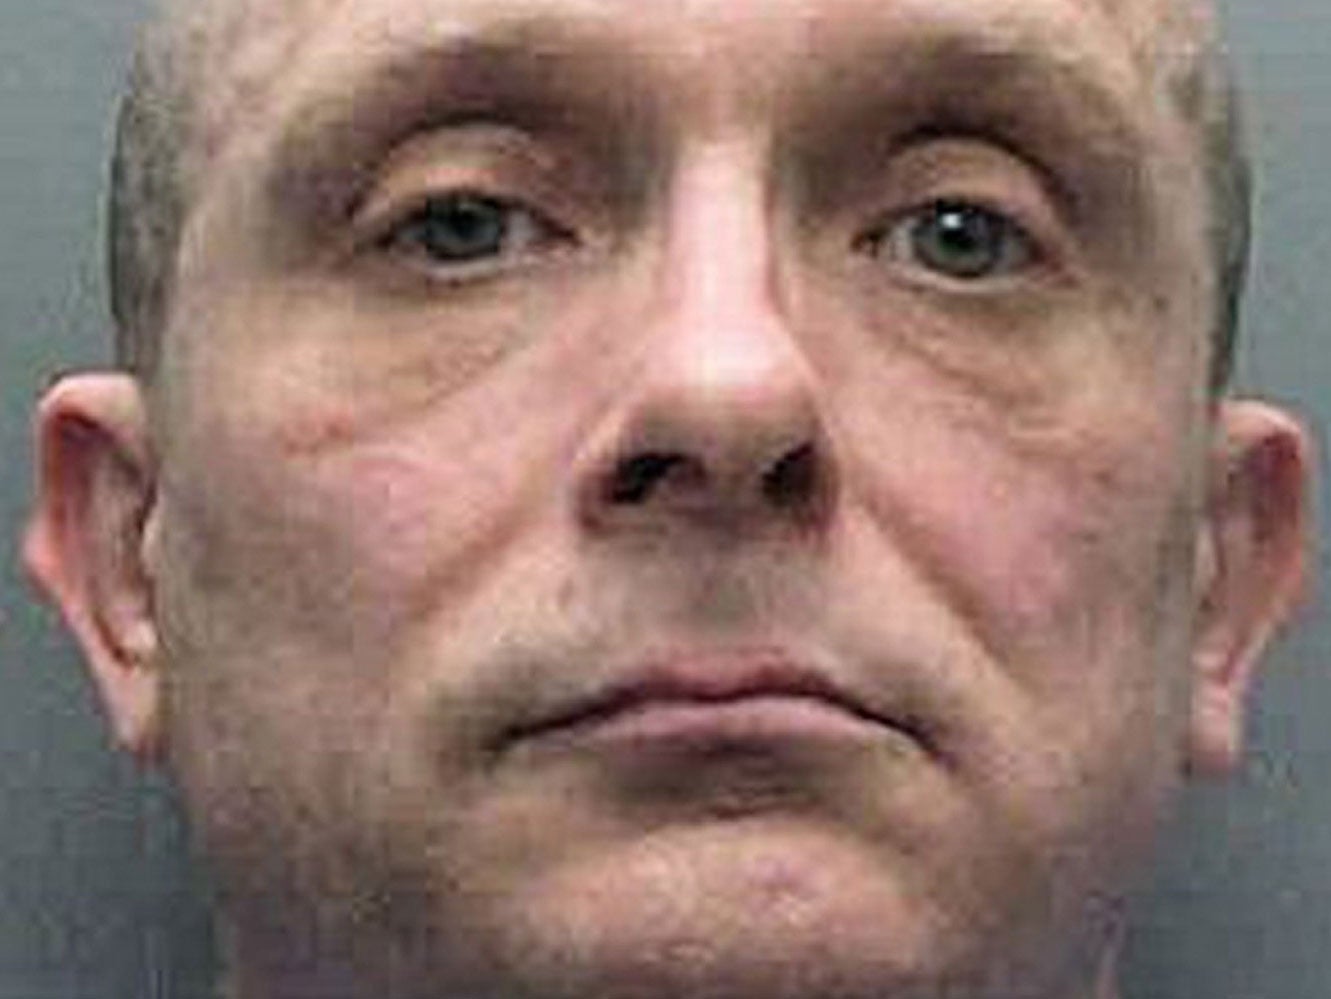 Russell Bishop denies murdering Nicola Fellows and Karen Hadaway in a Brighton park in 1986